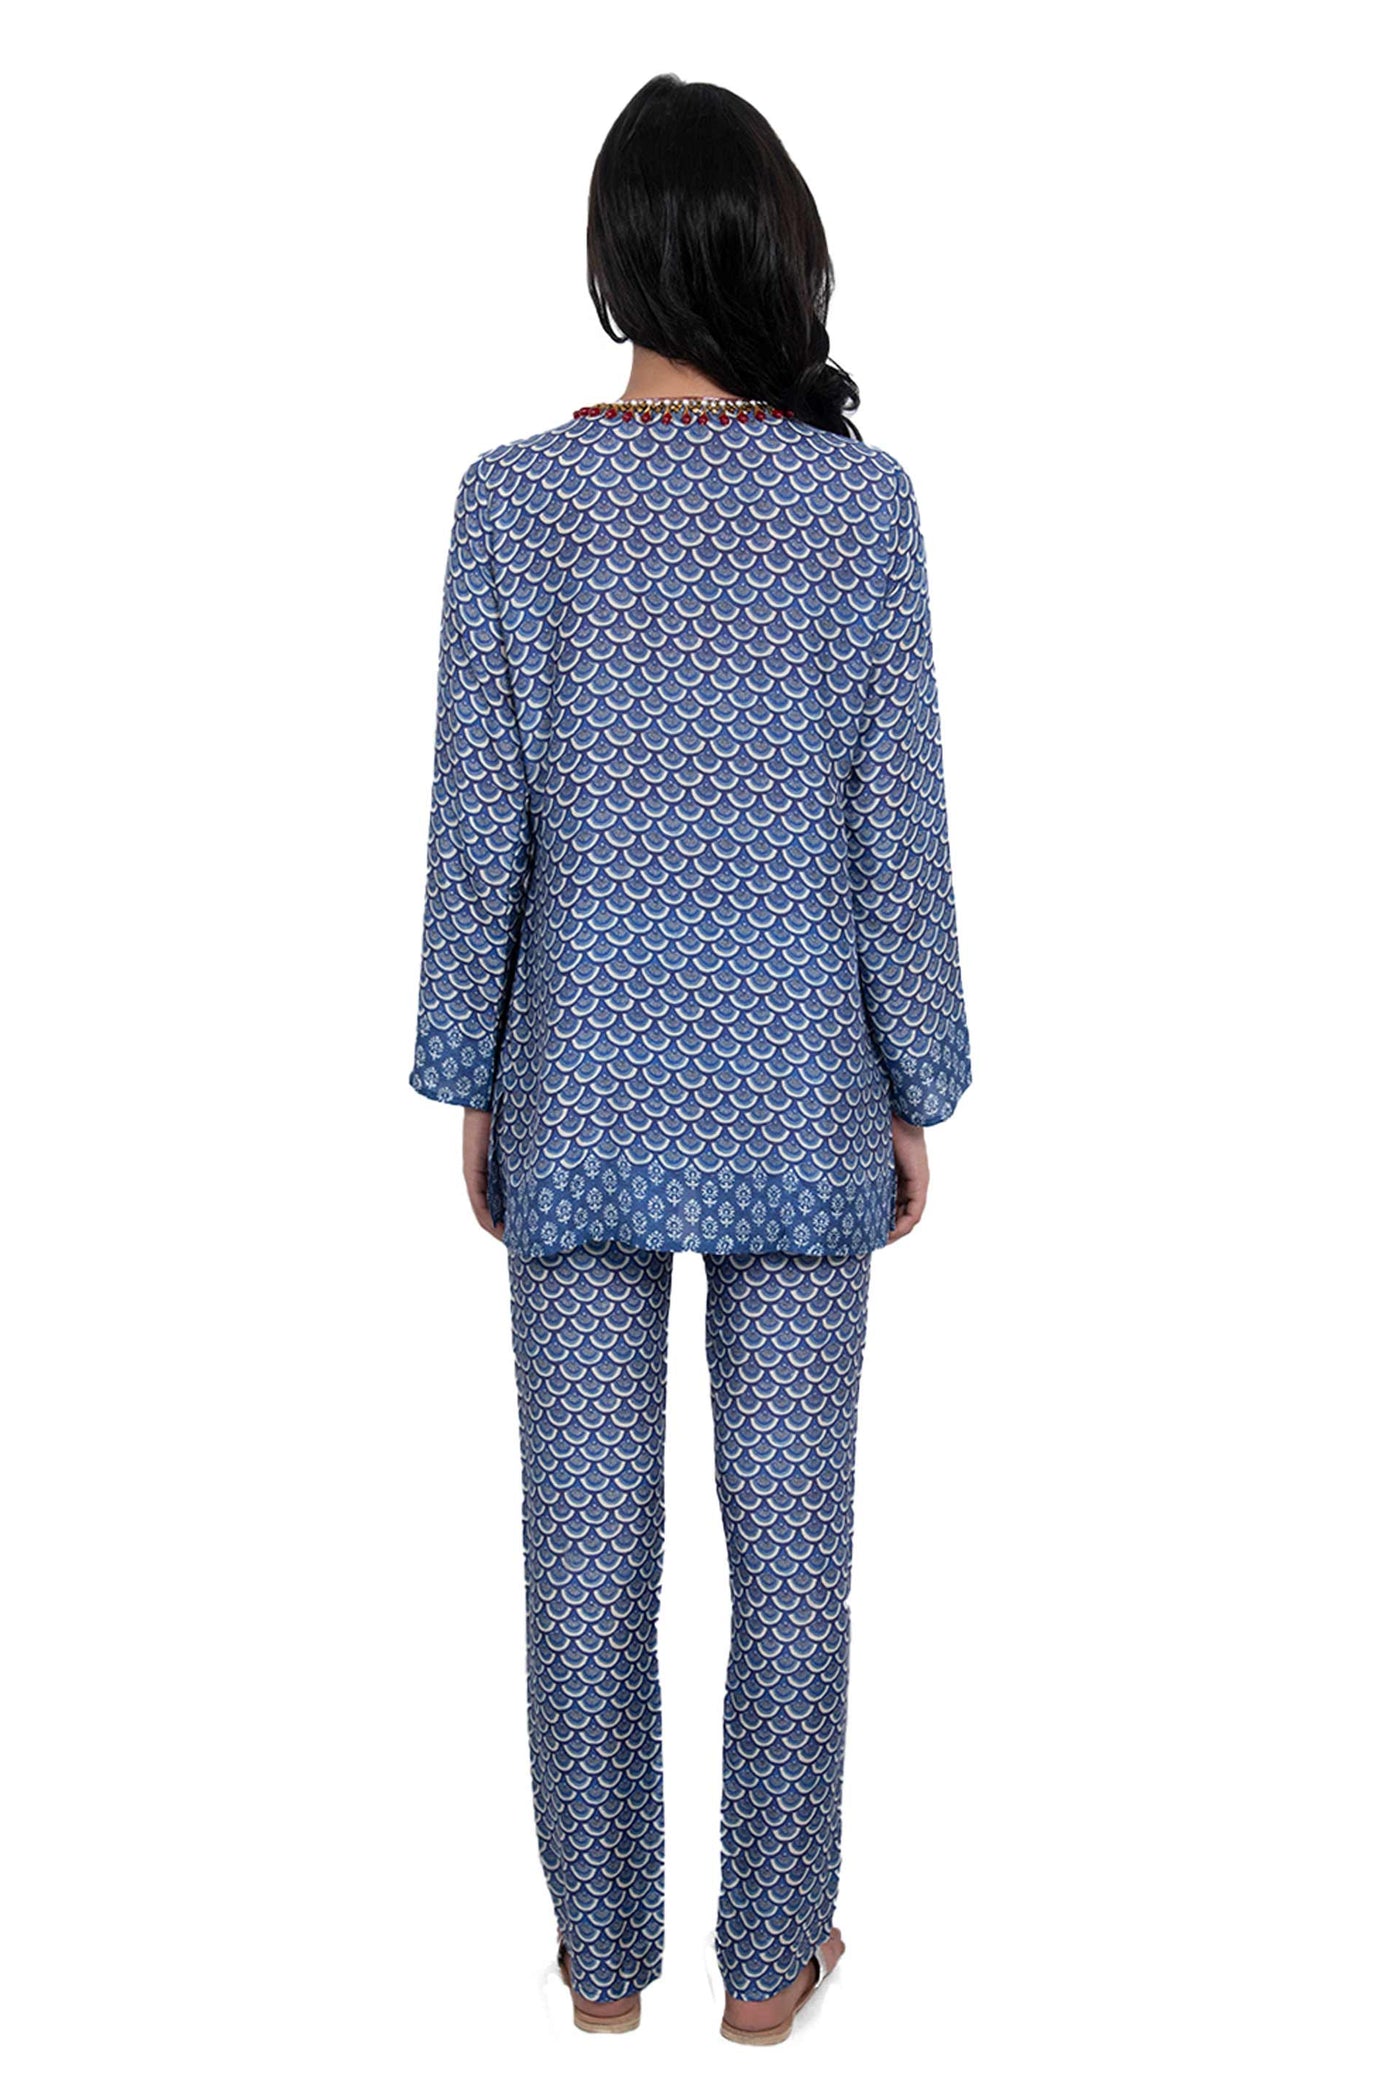 Monisha Jaising Indigo Jewelled Set blue online shopping melange singapore indian designer wear